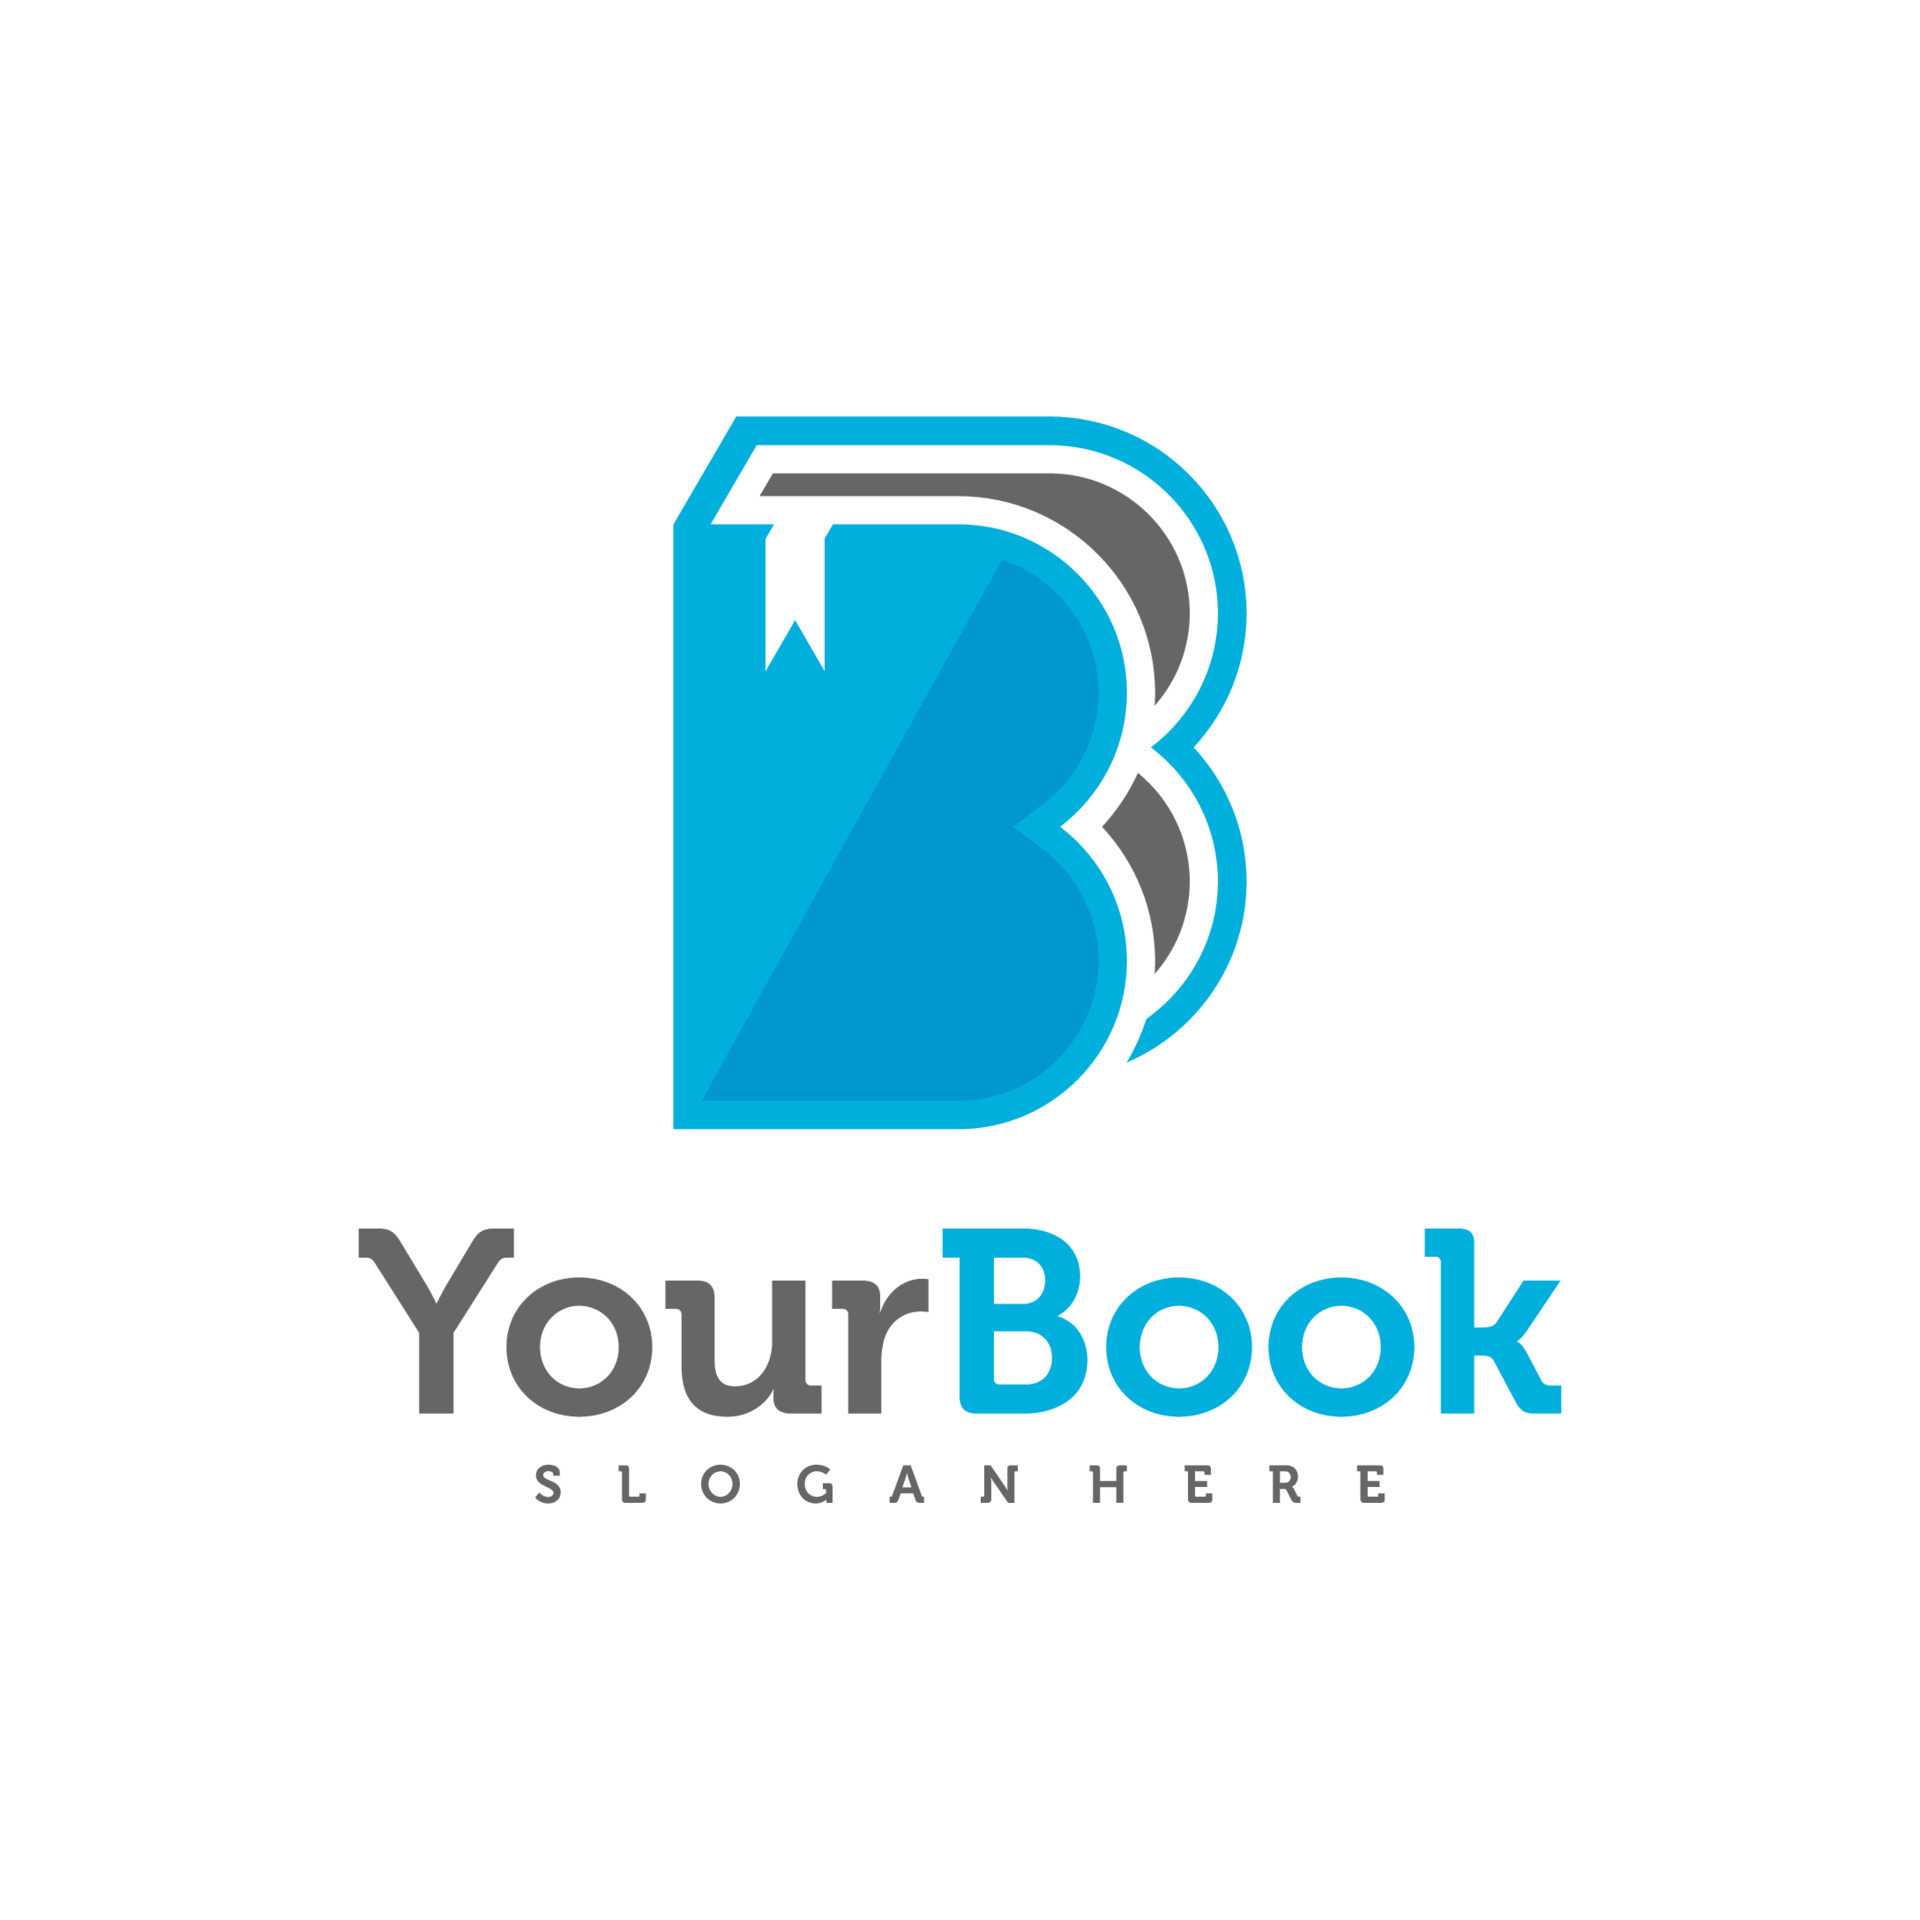 Letter B with Book logo design vector, Creative Book logo concepts ...